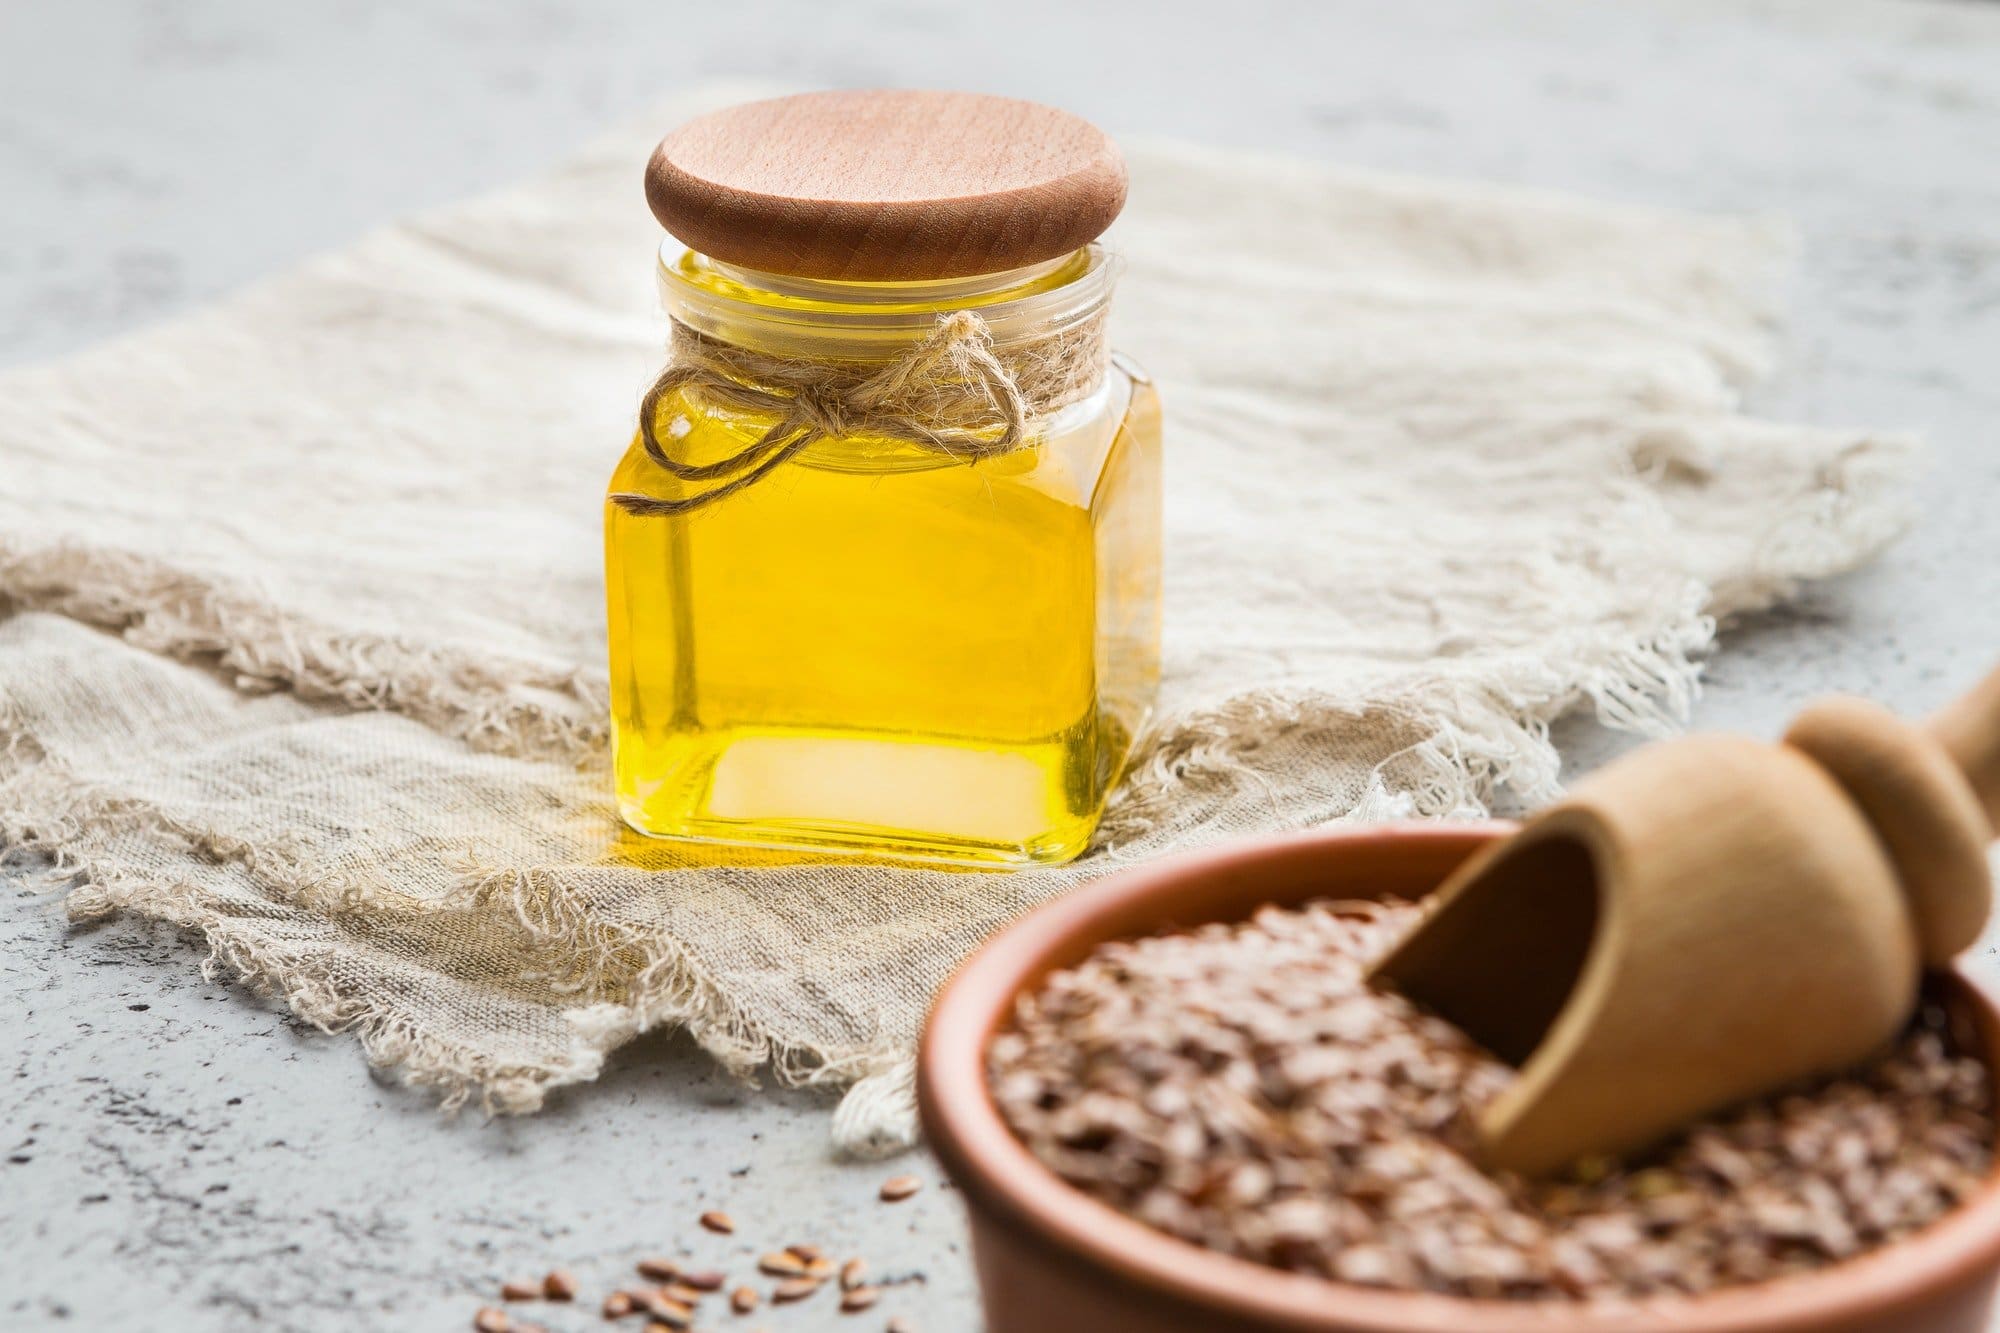 Hrana proti staranju: Laneno seme in laneno olje pomagata proti gubam